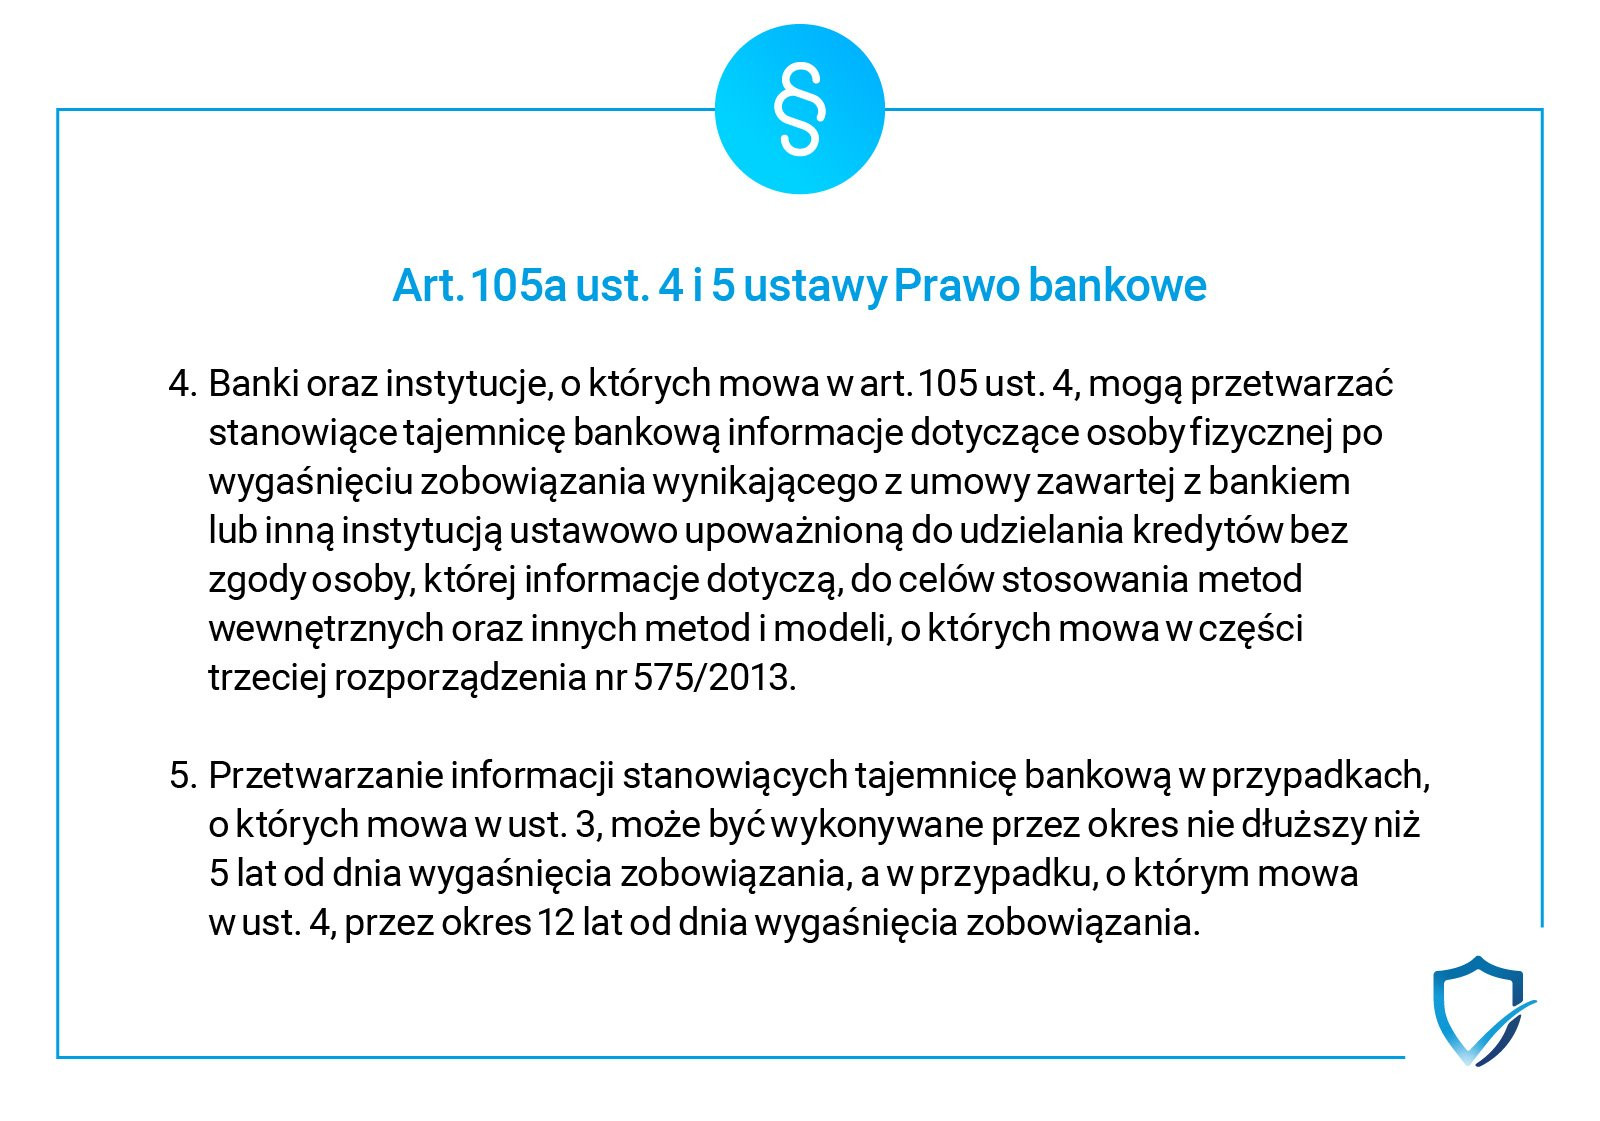 art. 105a ustawa prawo bankowe